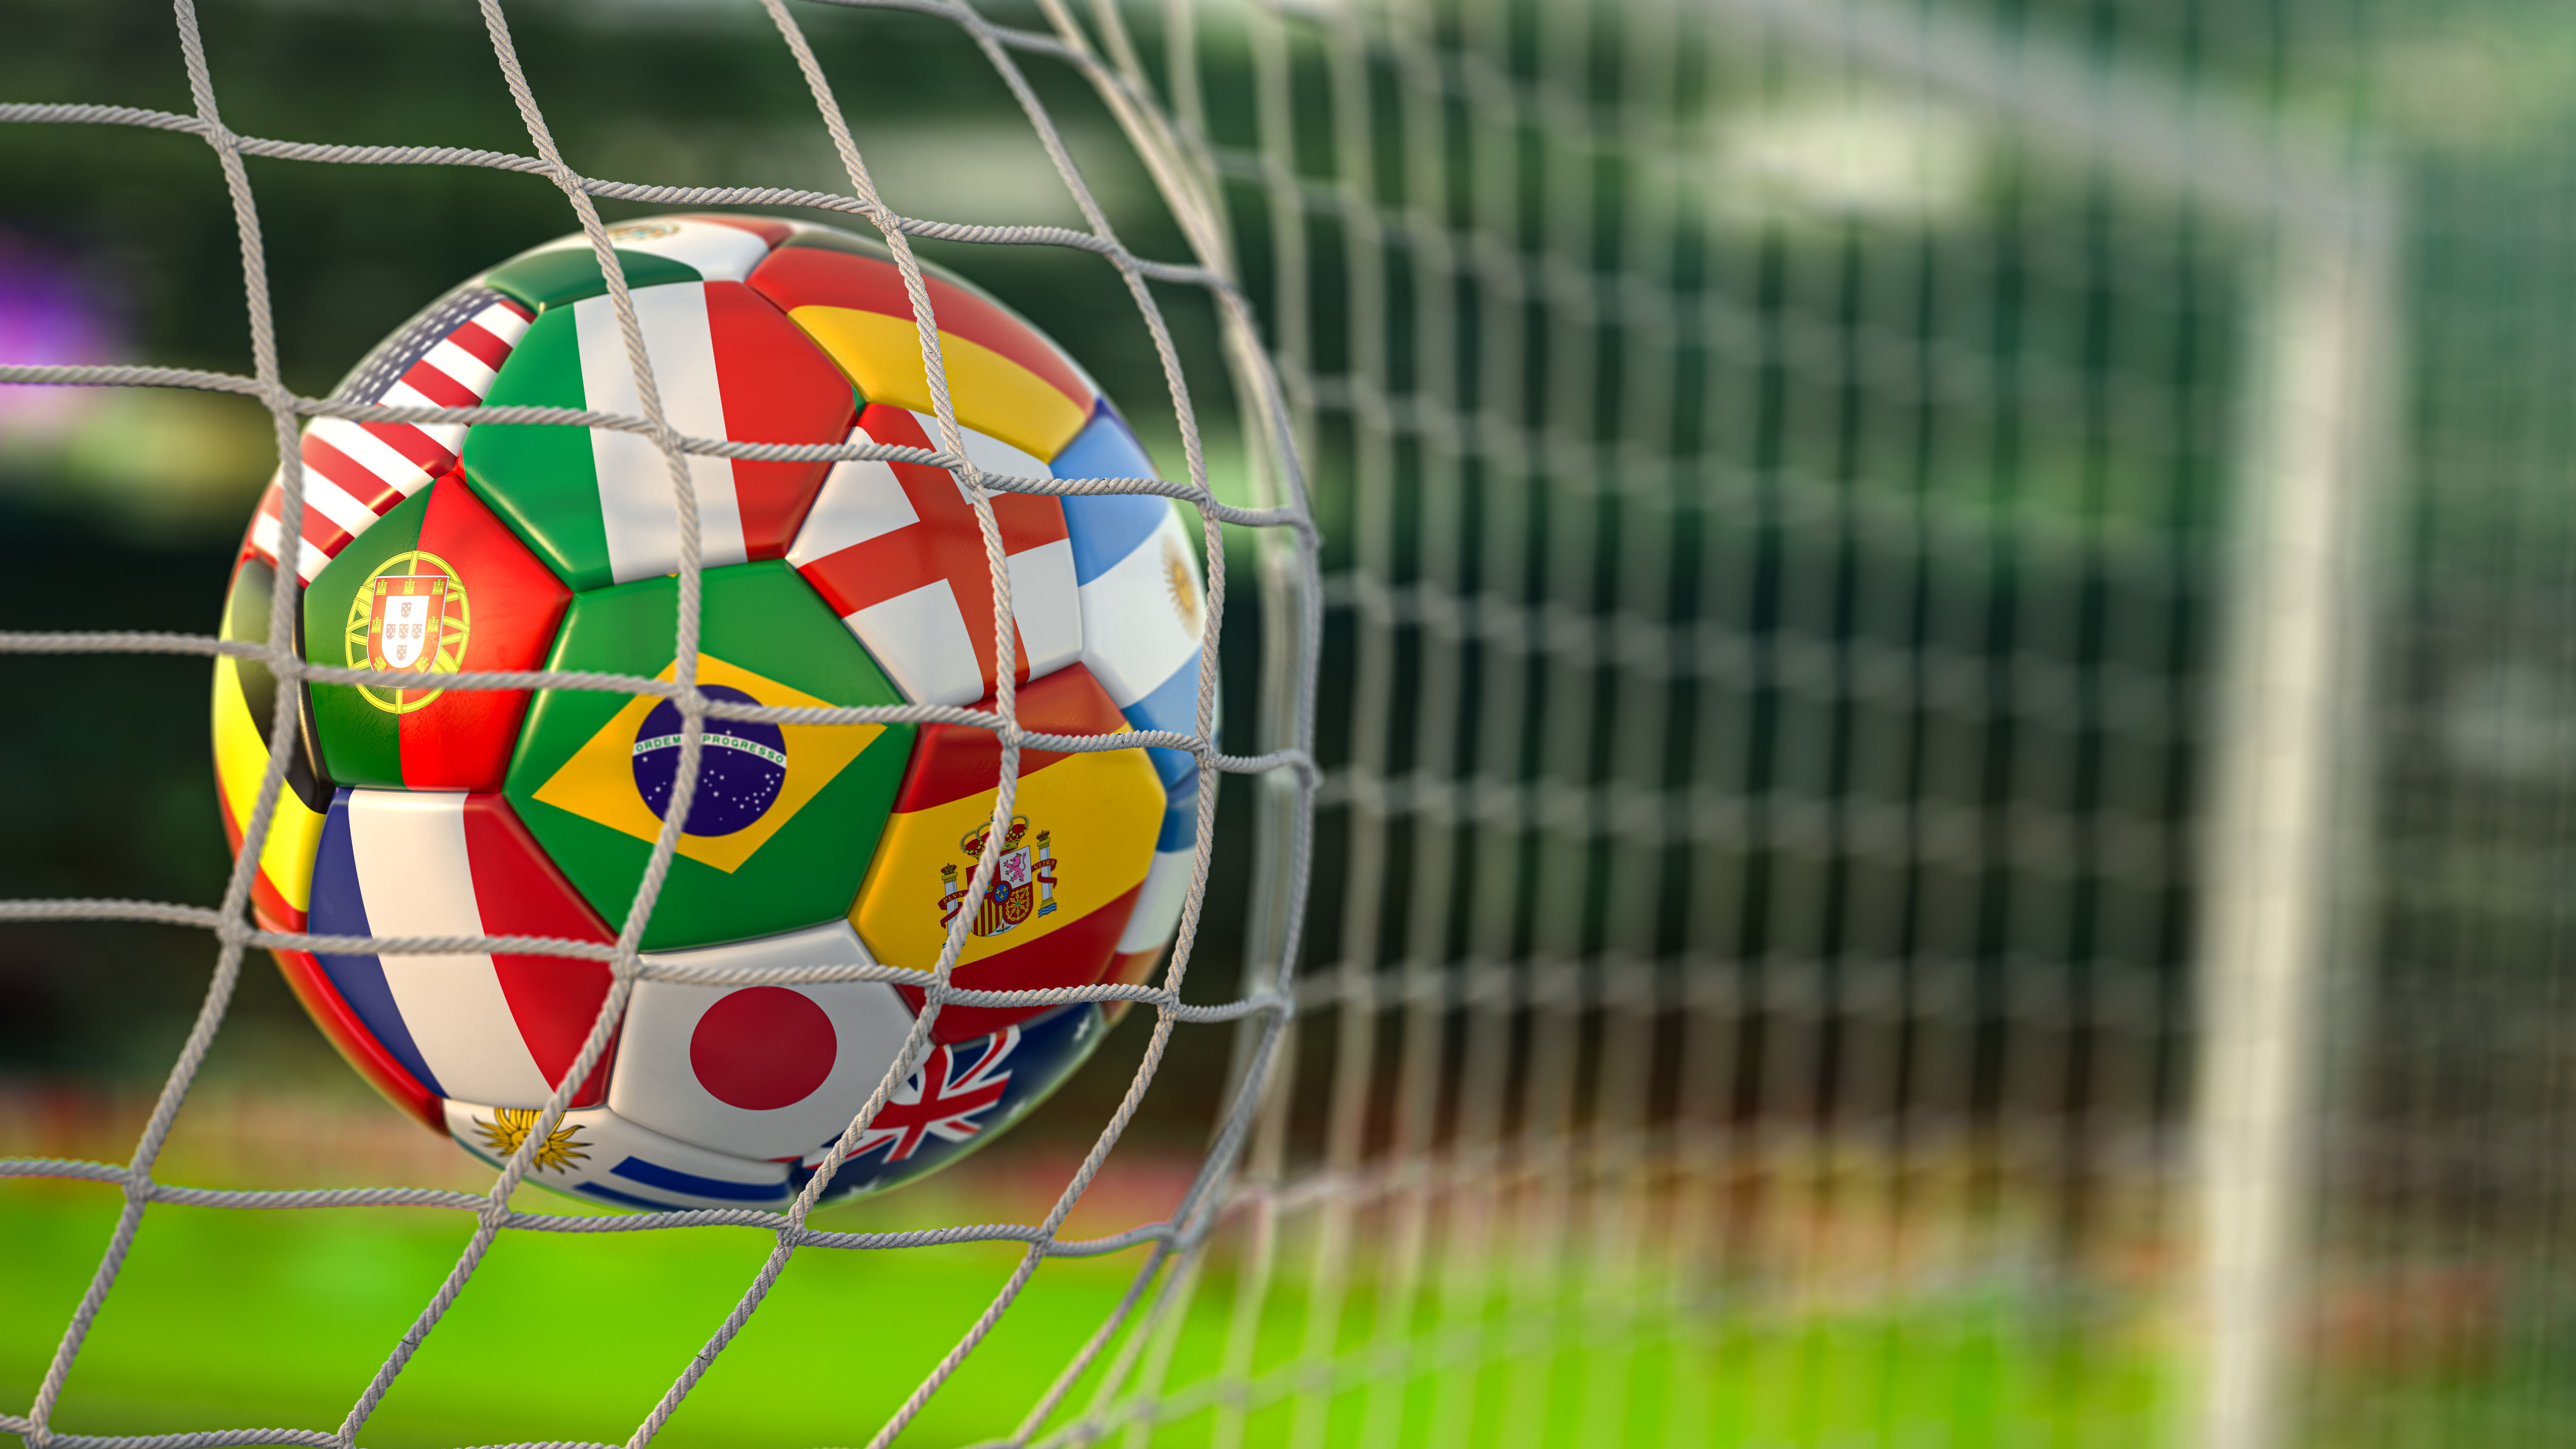 Copa 2022: como jogar game do Google e competir com torcedores ao vivo